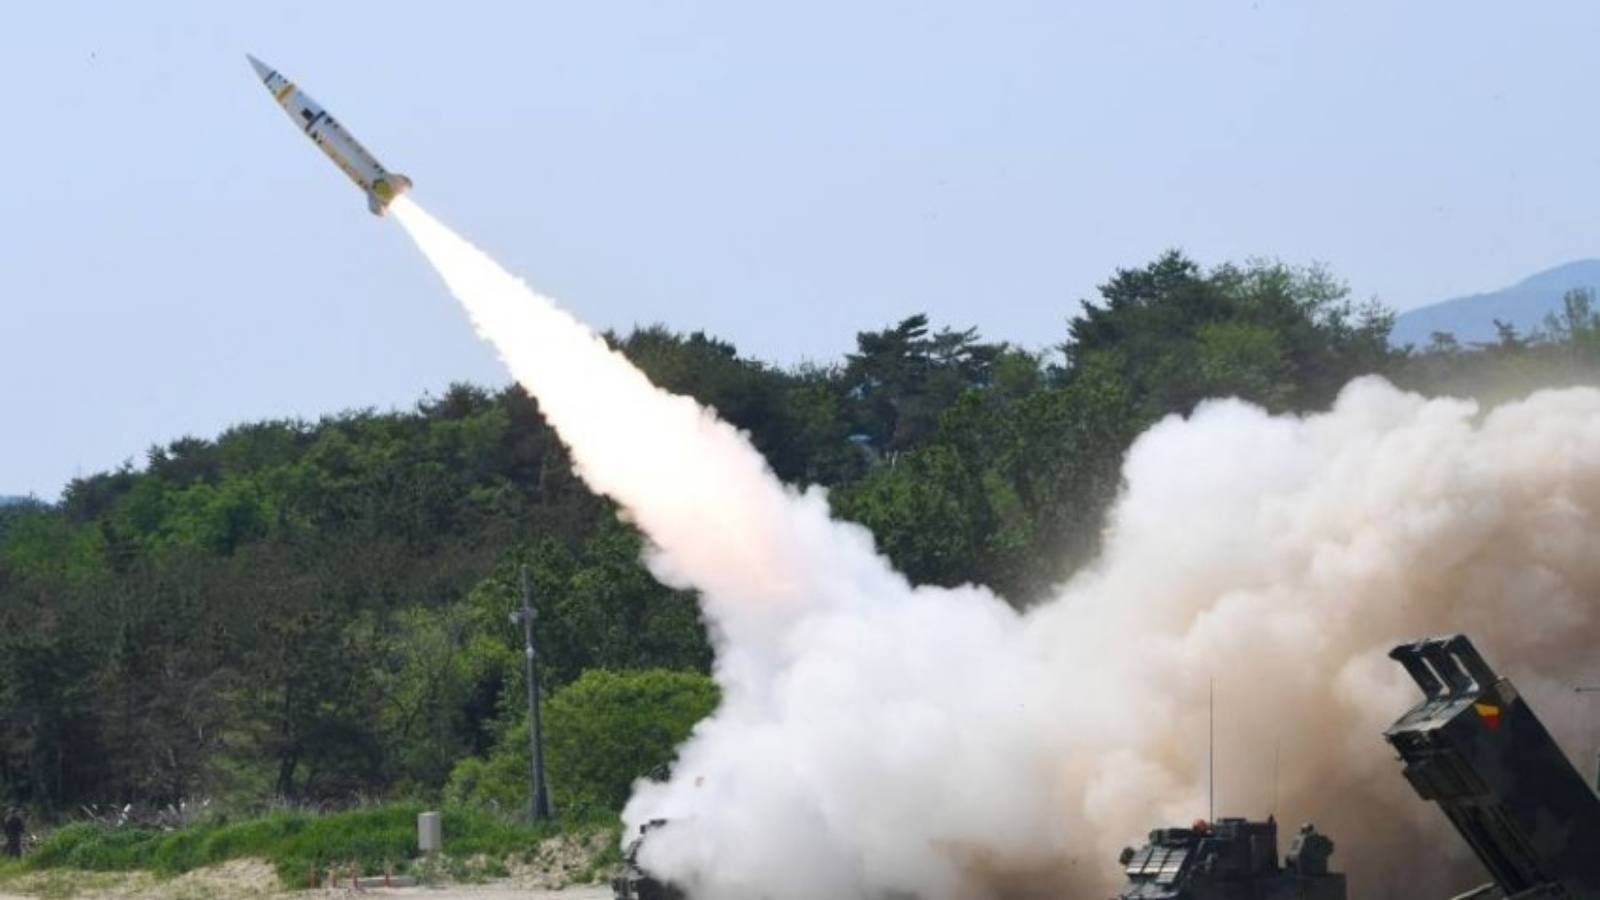 سيول تعرض صورة لإطلاق صاروخ من موقع غير معروف على الساحل الشرقي لكوريا الجنوبية خلال تمرين بالذخيرة الحية يهدف إلى مواجهة تجربة صاروخ كوريا الشمالية